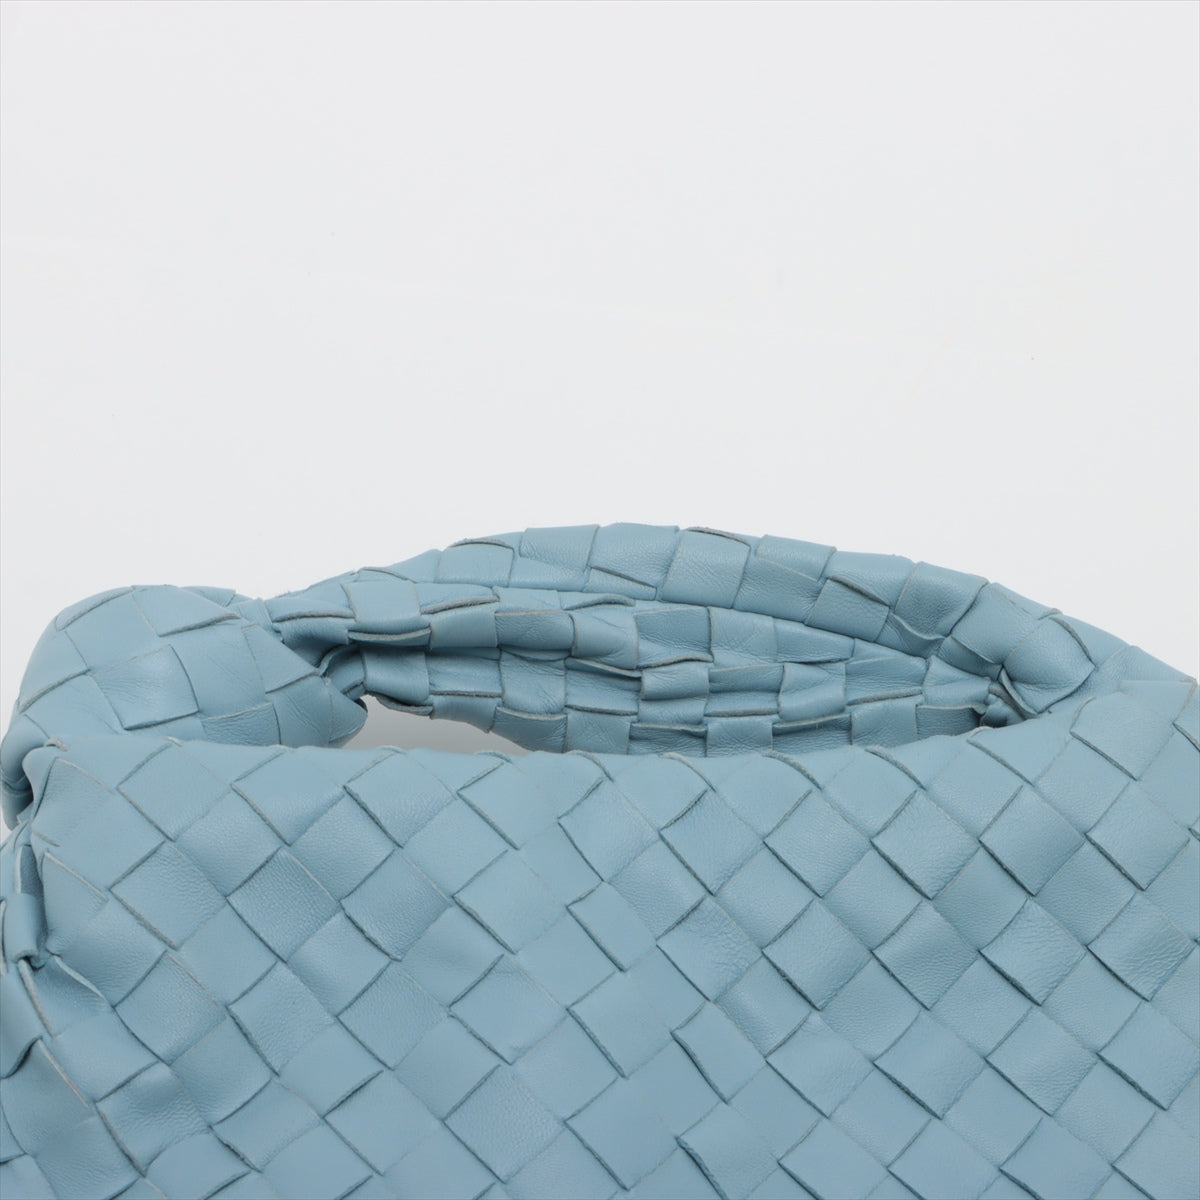 【Points 5 times! 3/4 20h~】 【 Secondary】 Bottega Veneta Mini The Jodie Interlude Patent Leather Handbag Light Blue